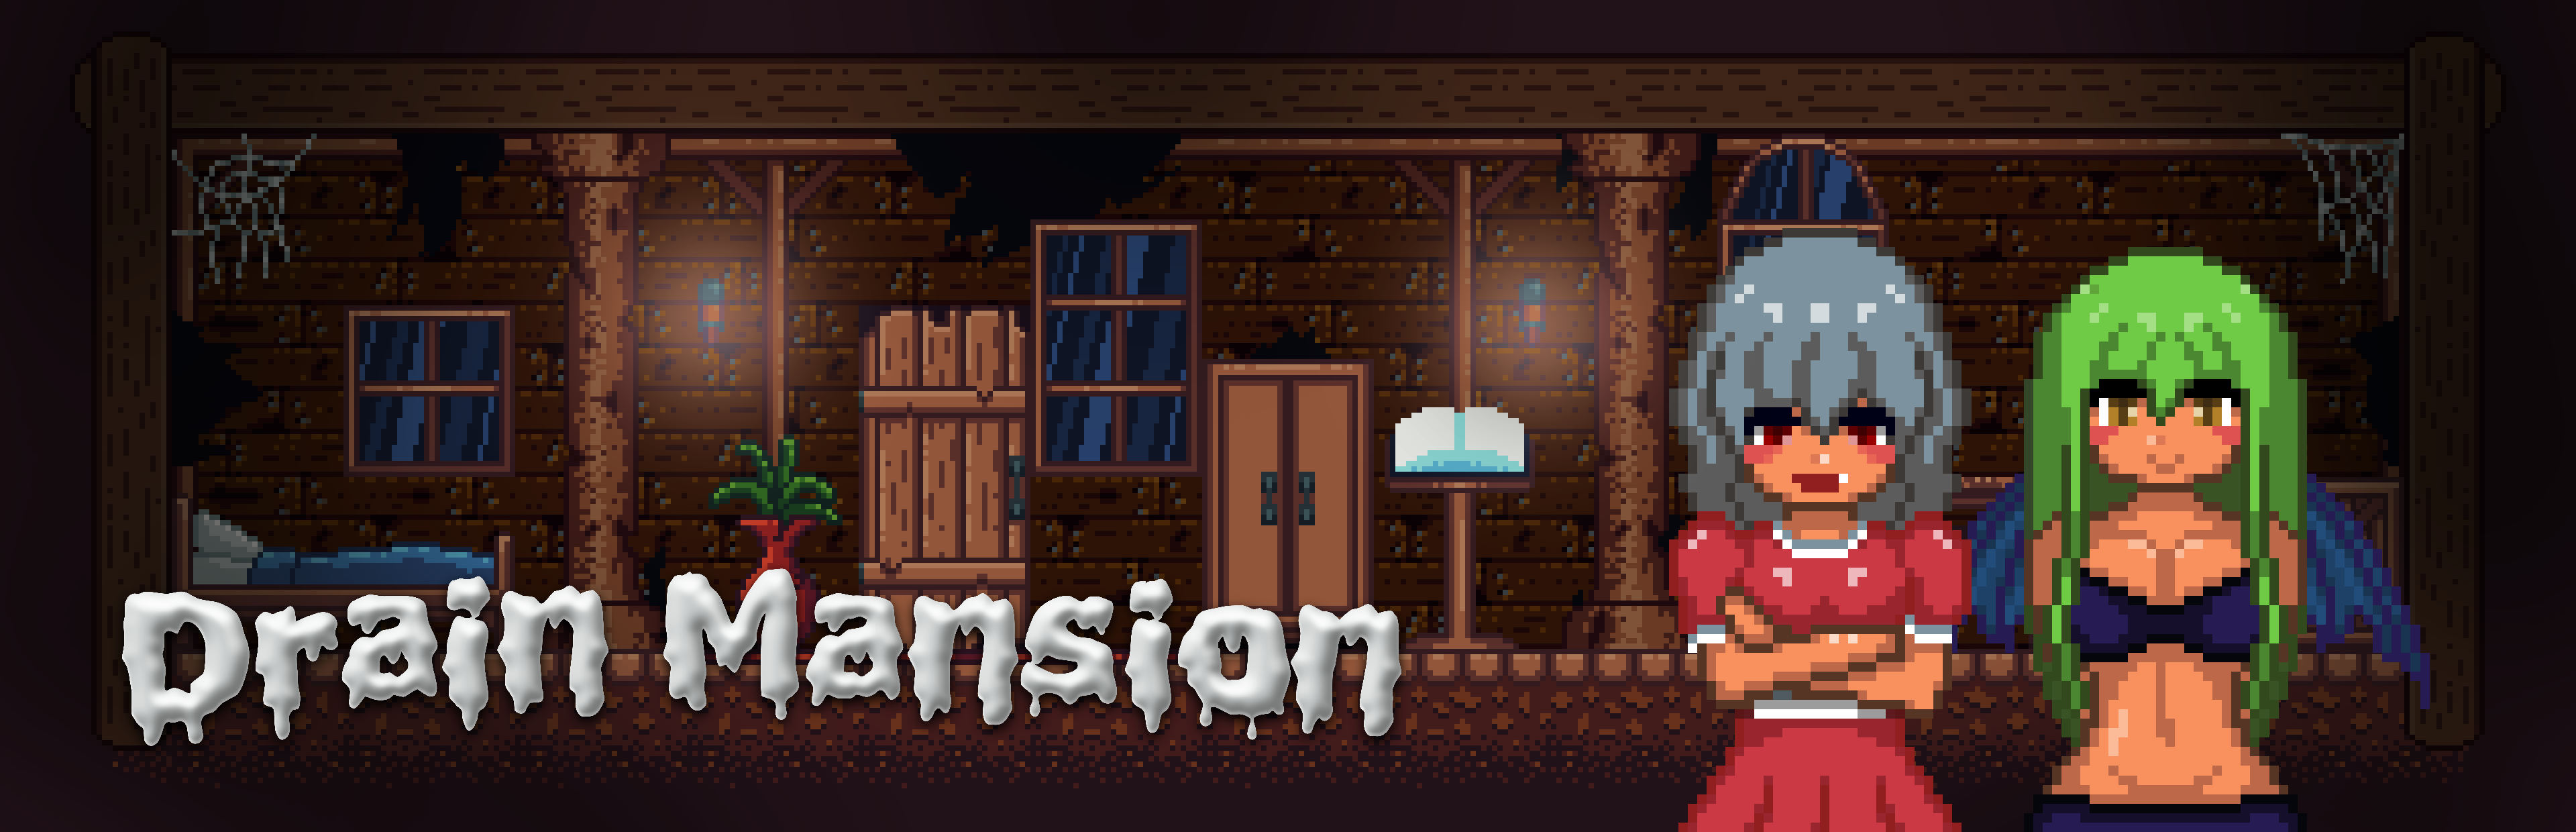 Drain Mansion - Full Version